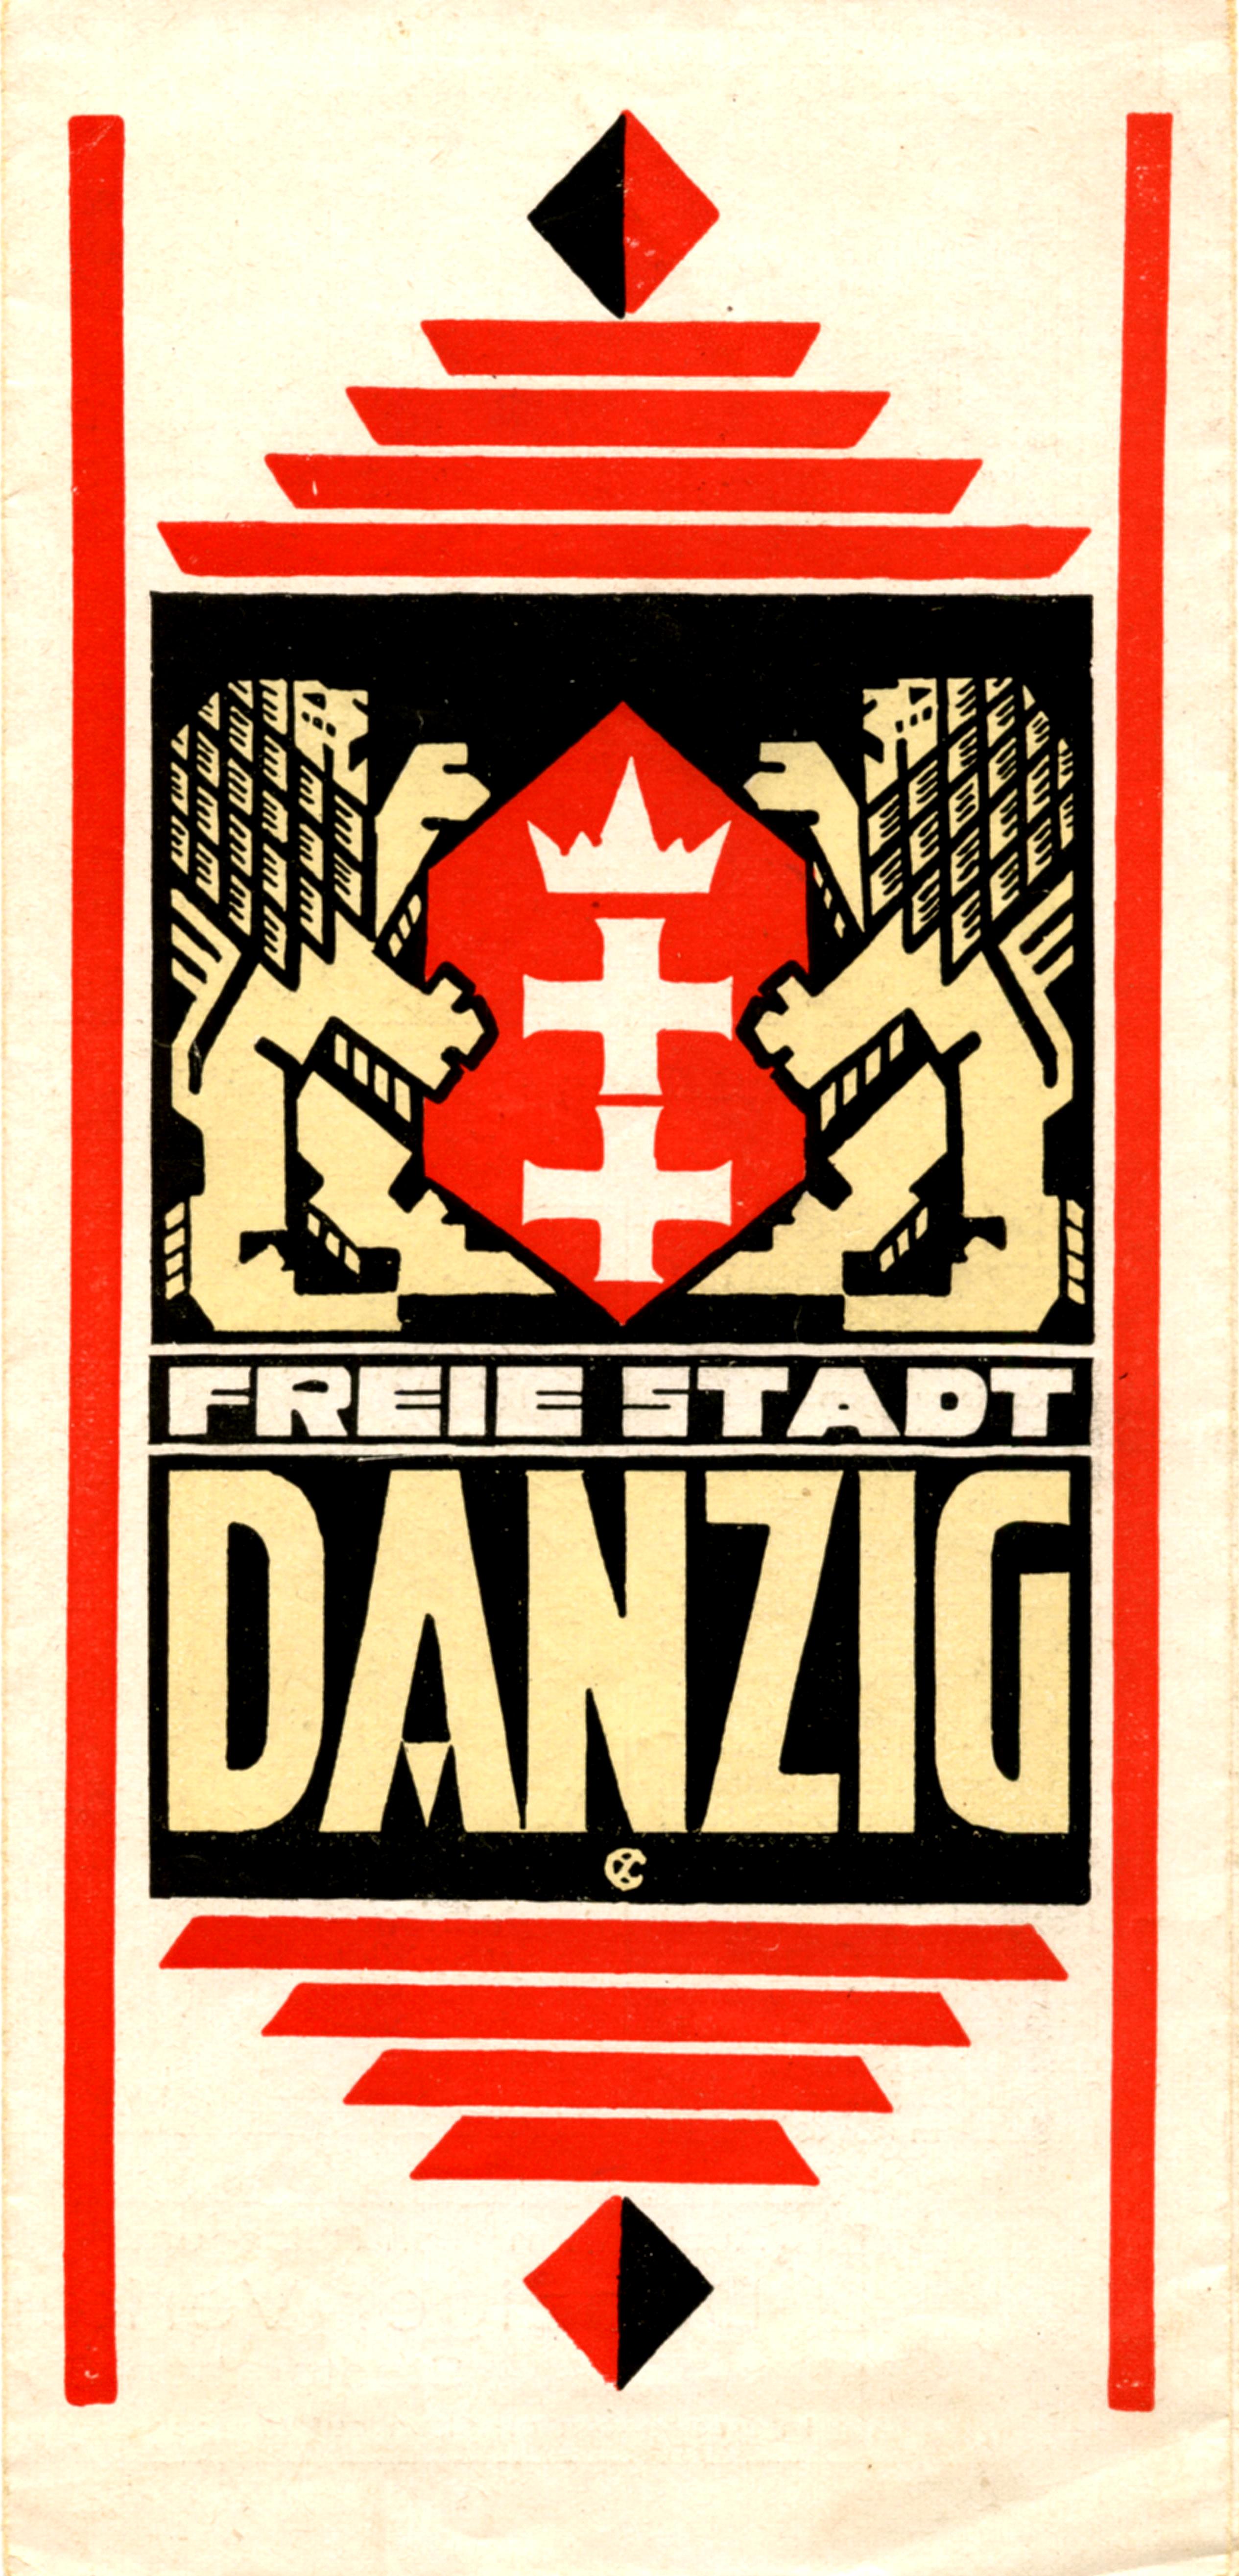 Faltblatt der Danziger Verkehrszentrale von 1927